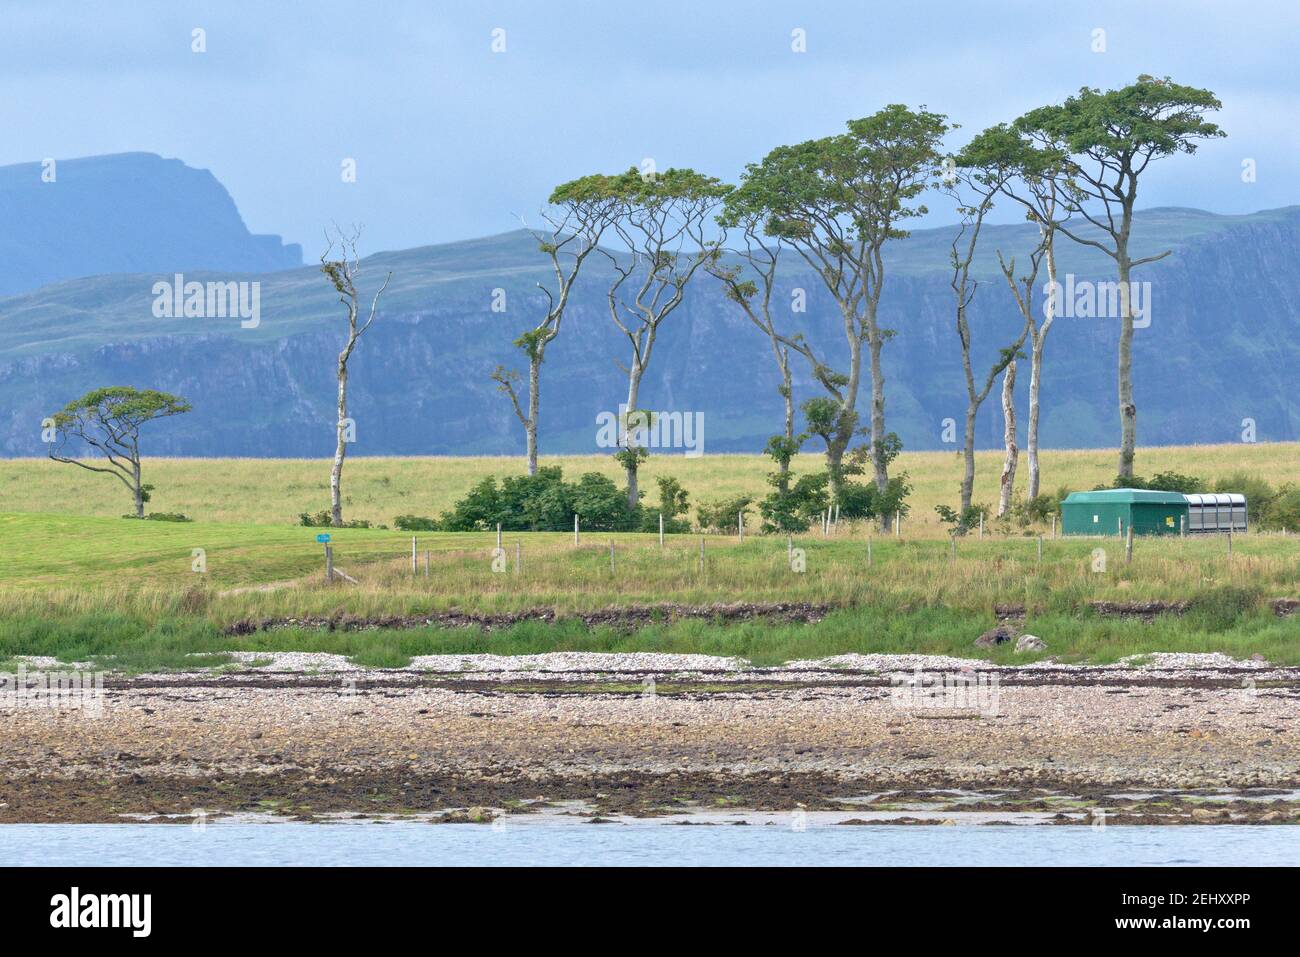 Ligne frappante d'arbres inhabituels sur le rivage d'une île écossaise éloignée. Eaux calmes et plage rocheuse au premier plan avec falaises spectaculaires comme arrière-plan Banque D'Images